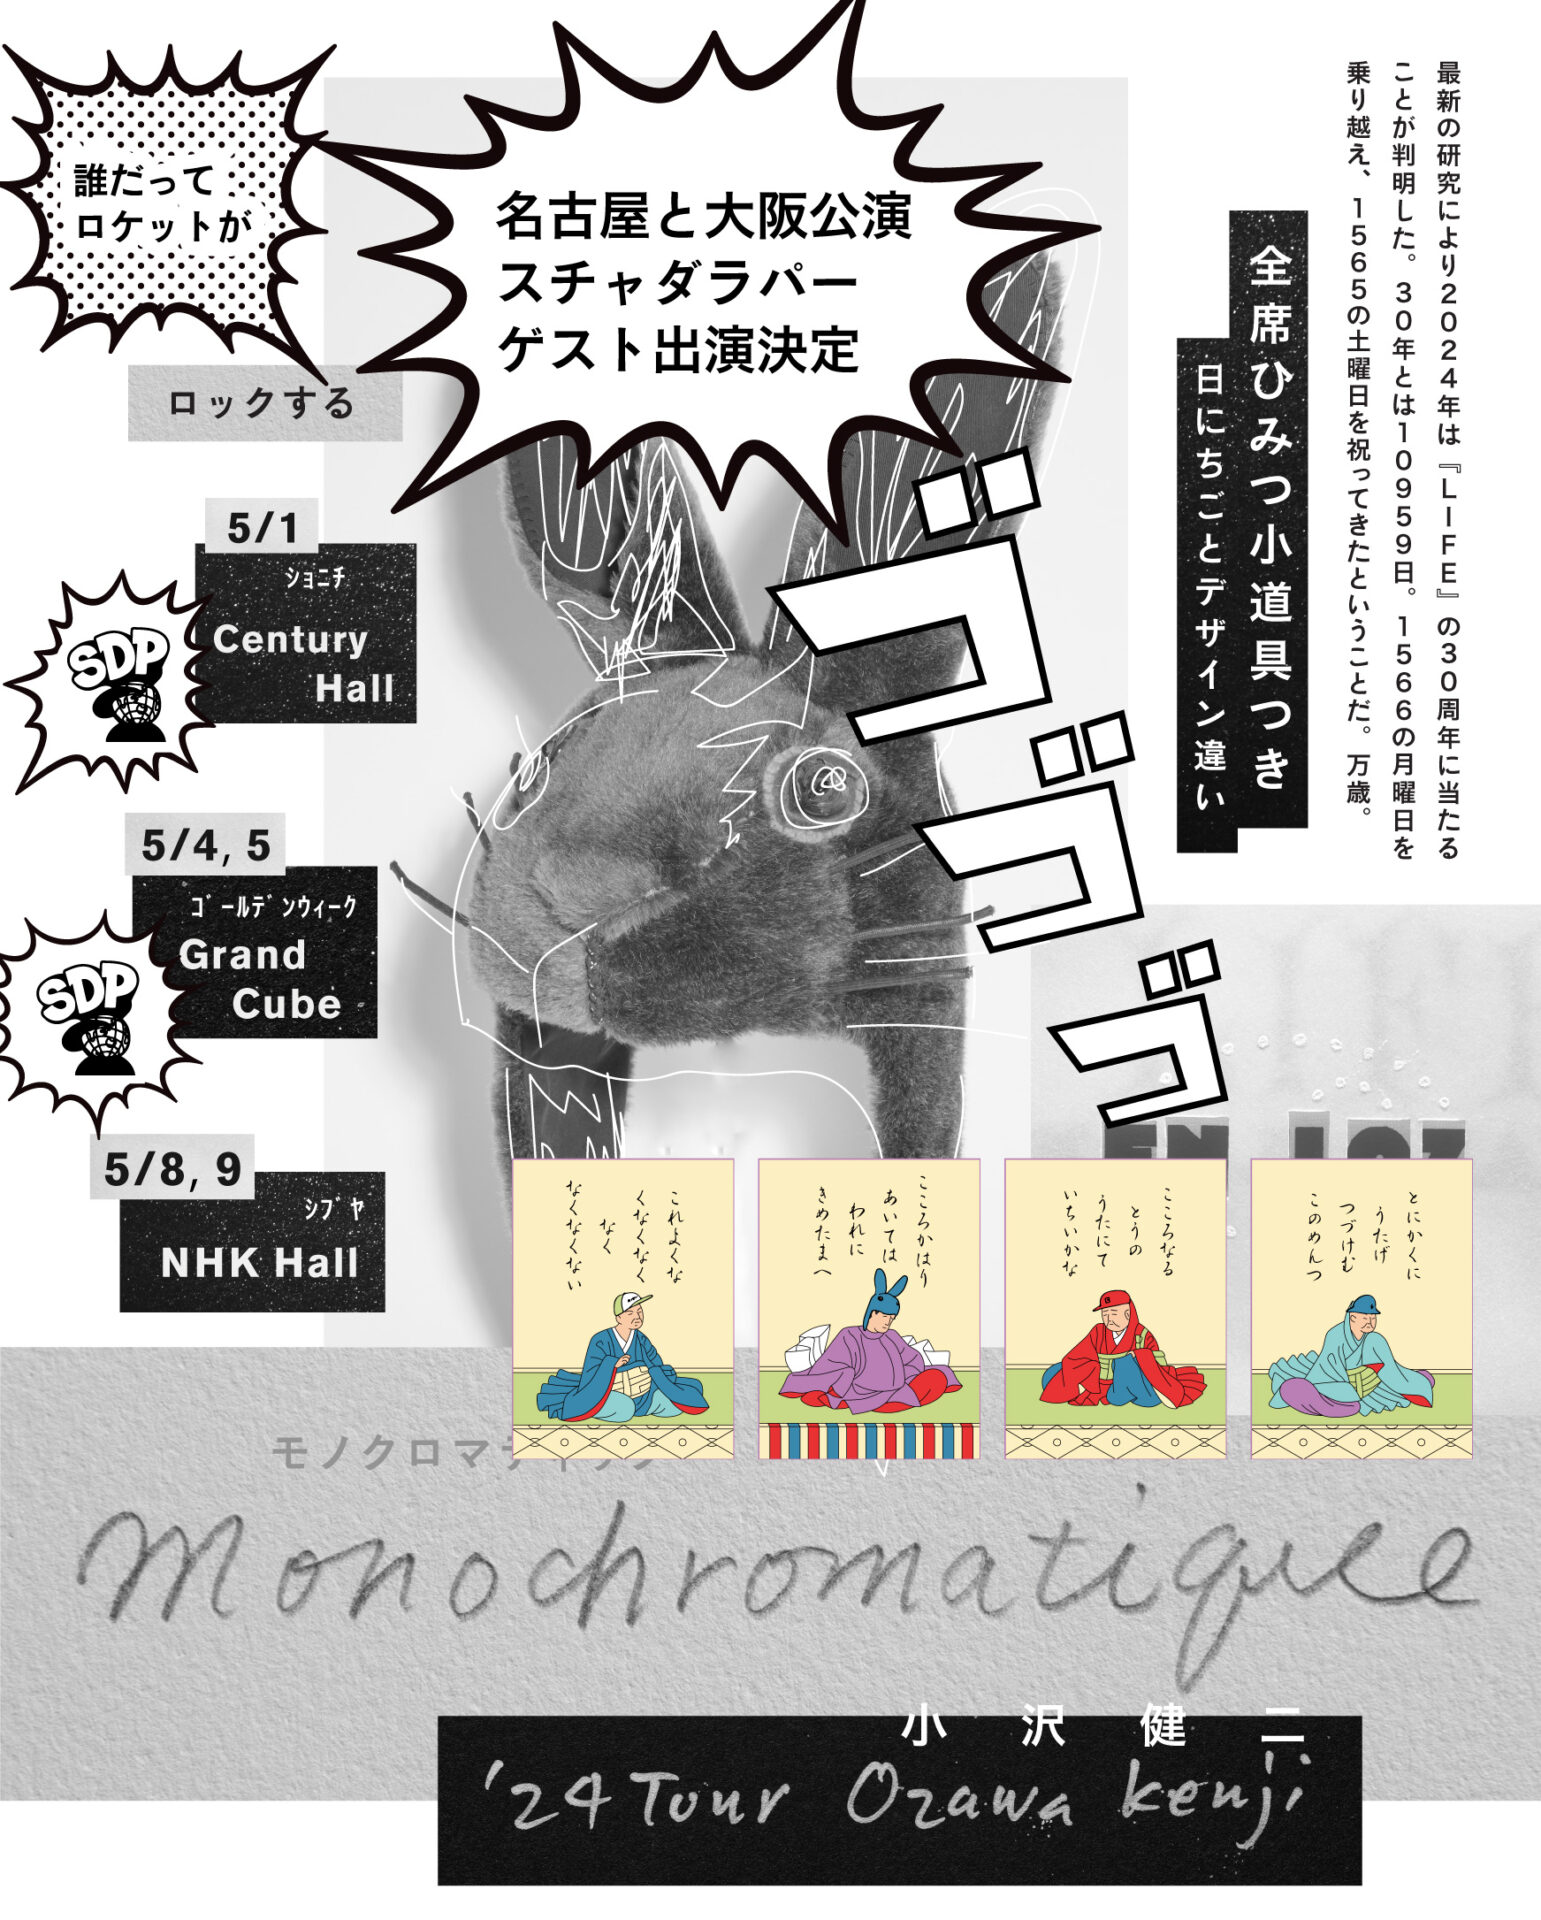  小沢健二「Monochromatique モノクロマティック」‘24ツアー